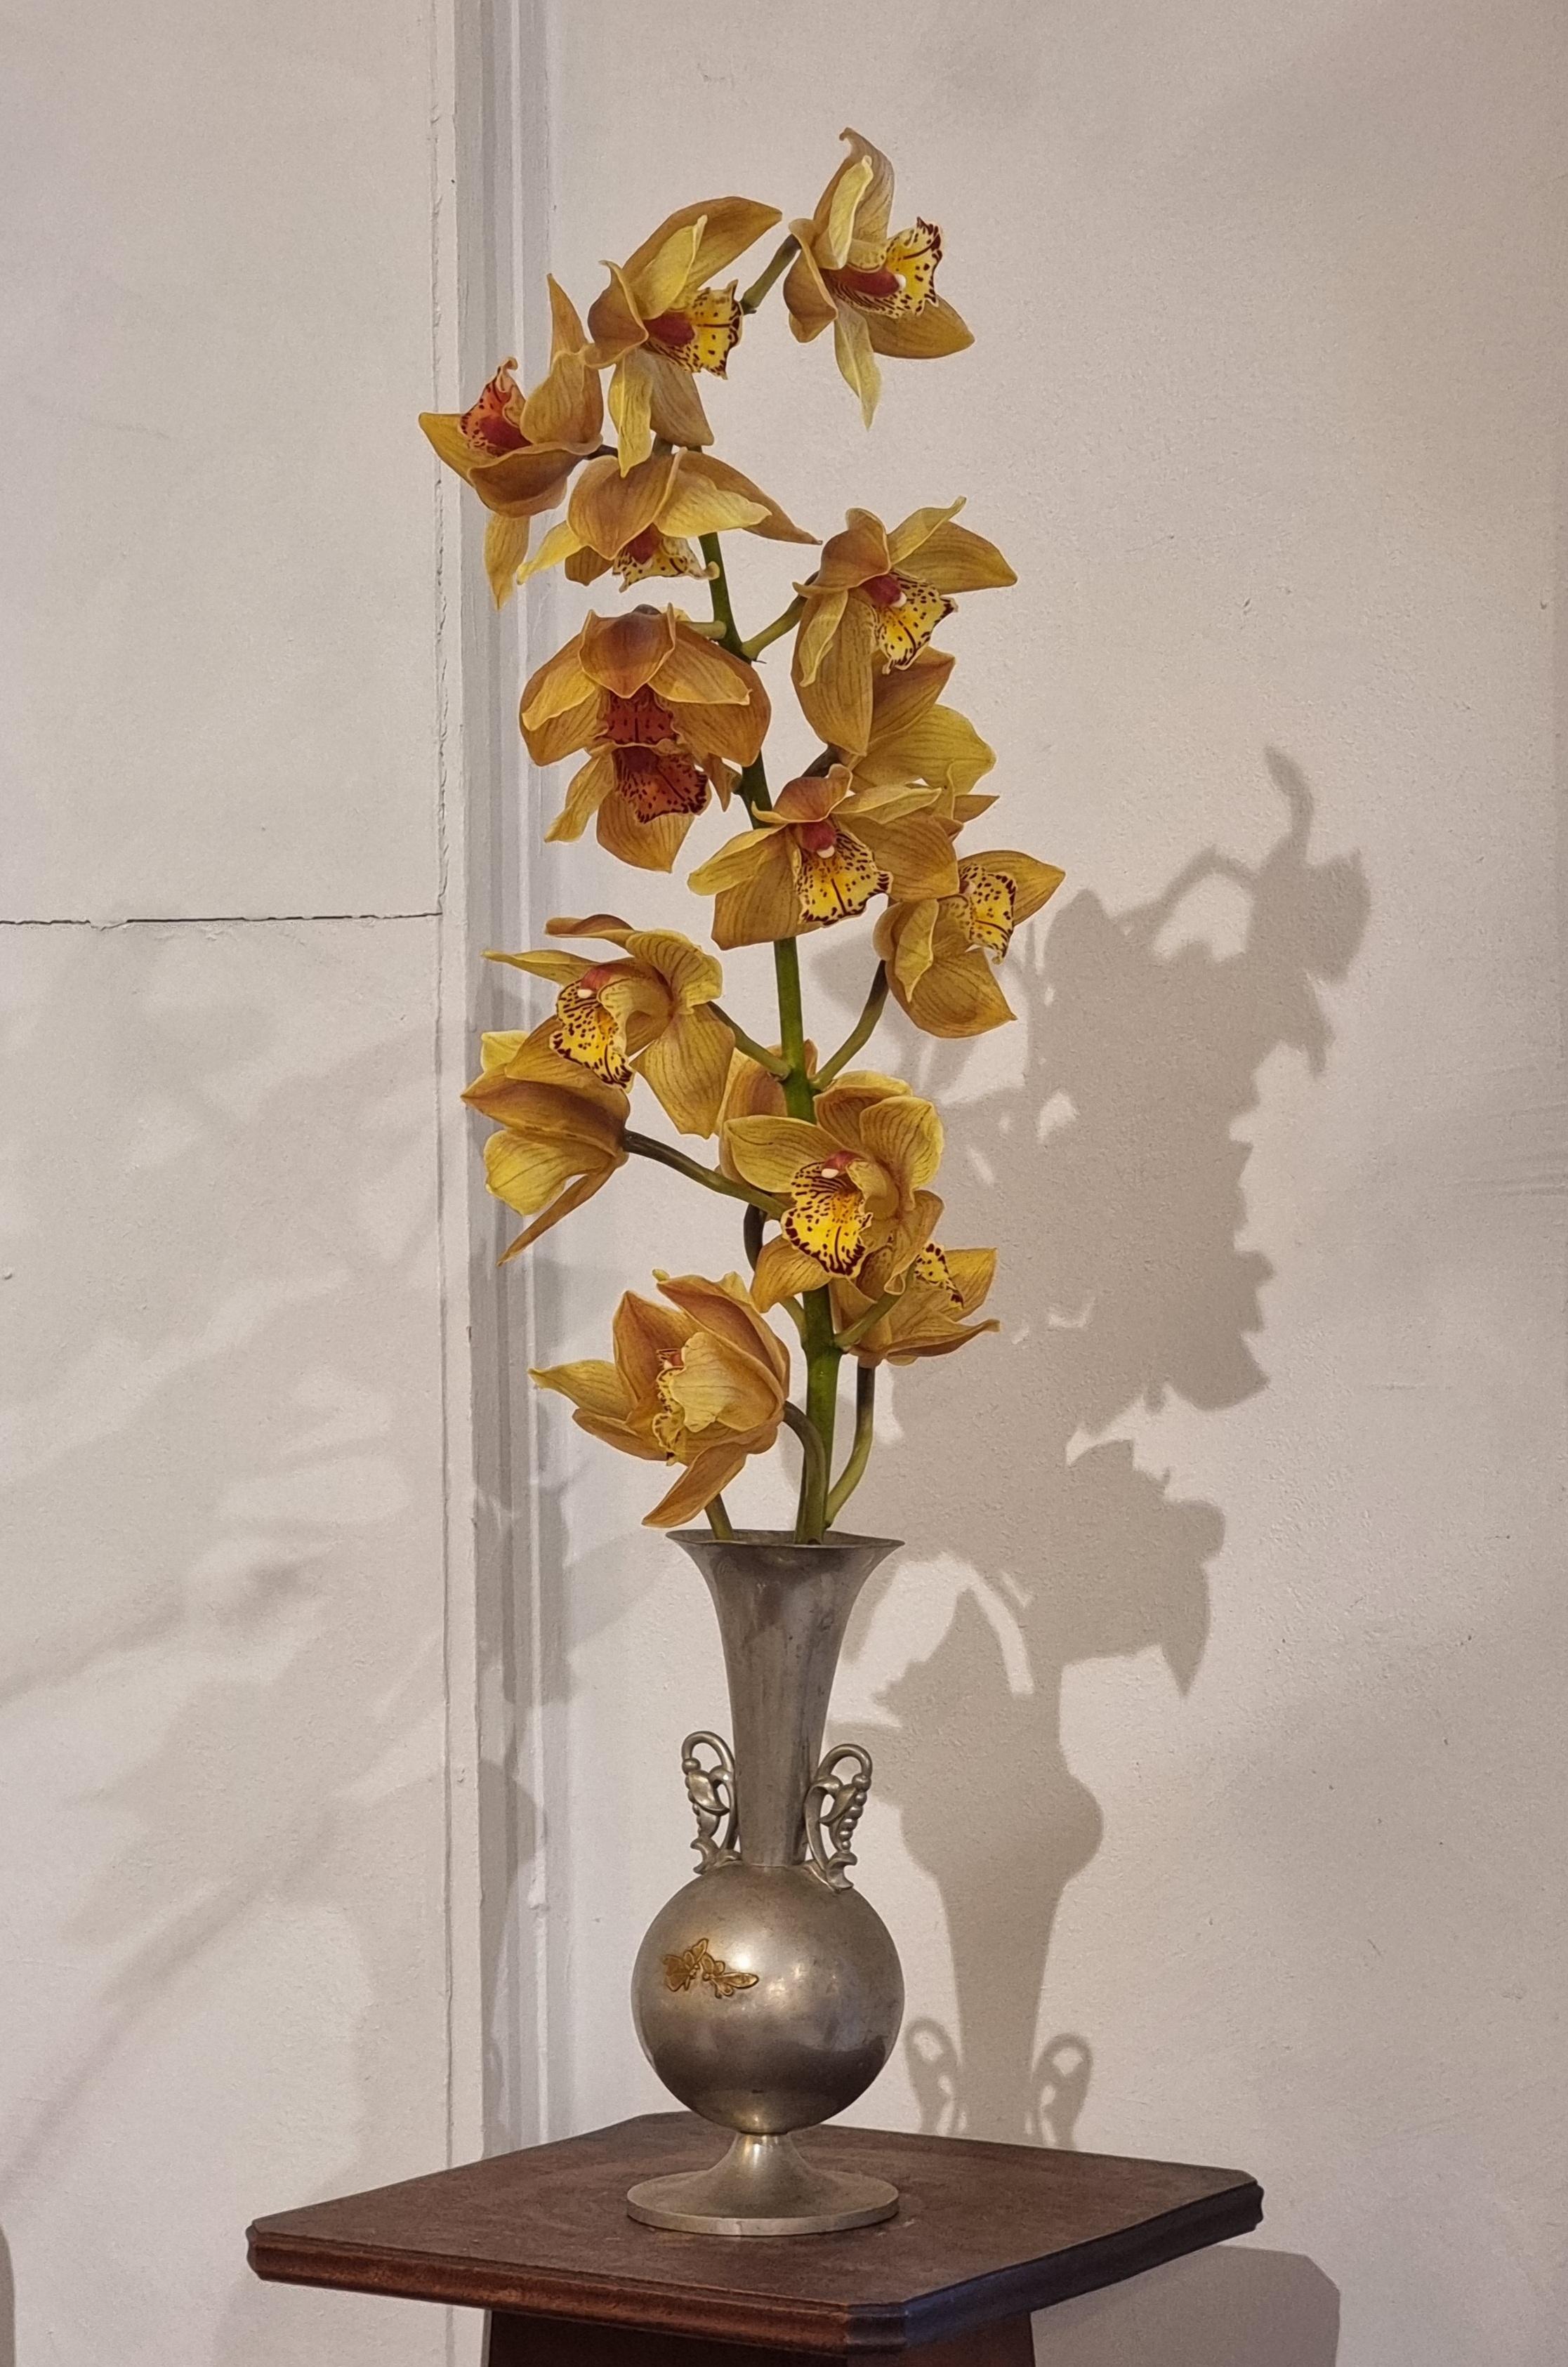 Vase en étain avec incrustation de laiton représentant des papillons, belles anses en forme de fleurs. 

Fabriqué par KE & Co, Suède 1934 / Swedish Grace. En bon état, le vase est légèrement incliné. Une pièce de charme, intemporelle et rare, à la